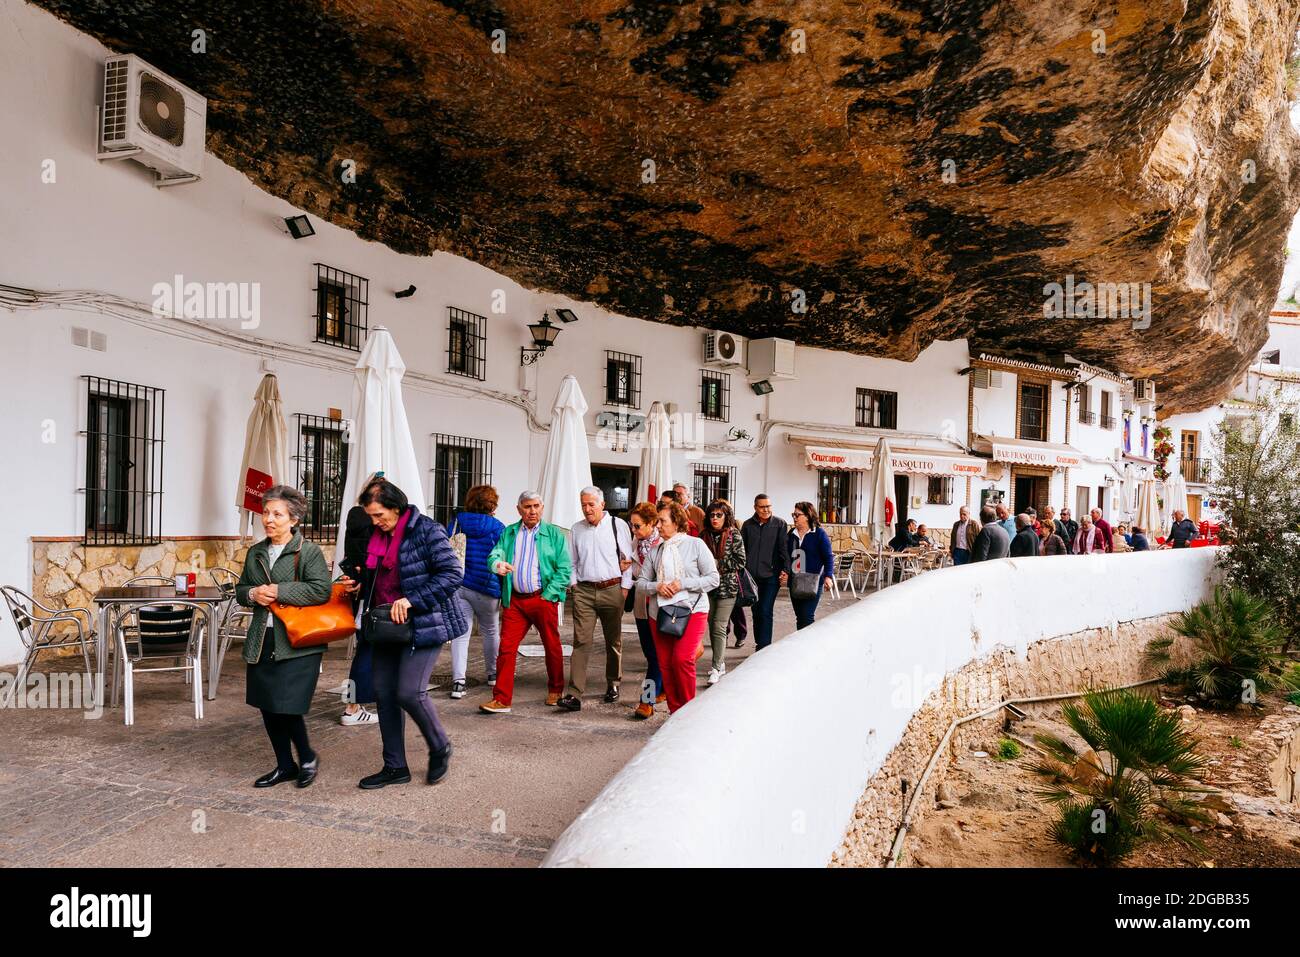 La célèbre rue Cuevas del sol. Rue avec des habitations construites sur des surplombs rocheux. Setenil de las Bodegas, Cádiz, Andalucía, Espagne, Europe Banque D'Images